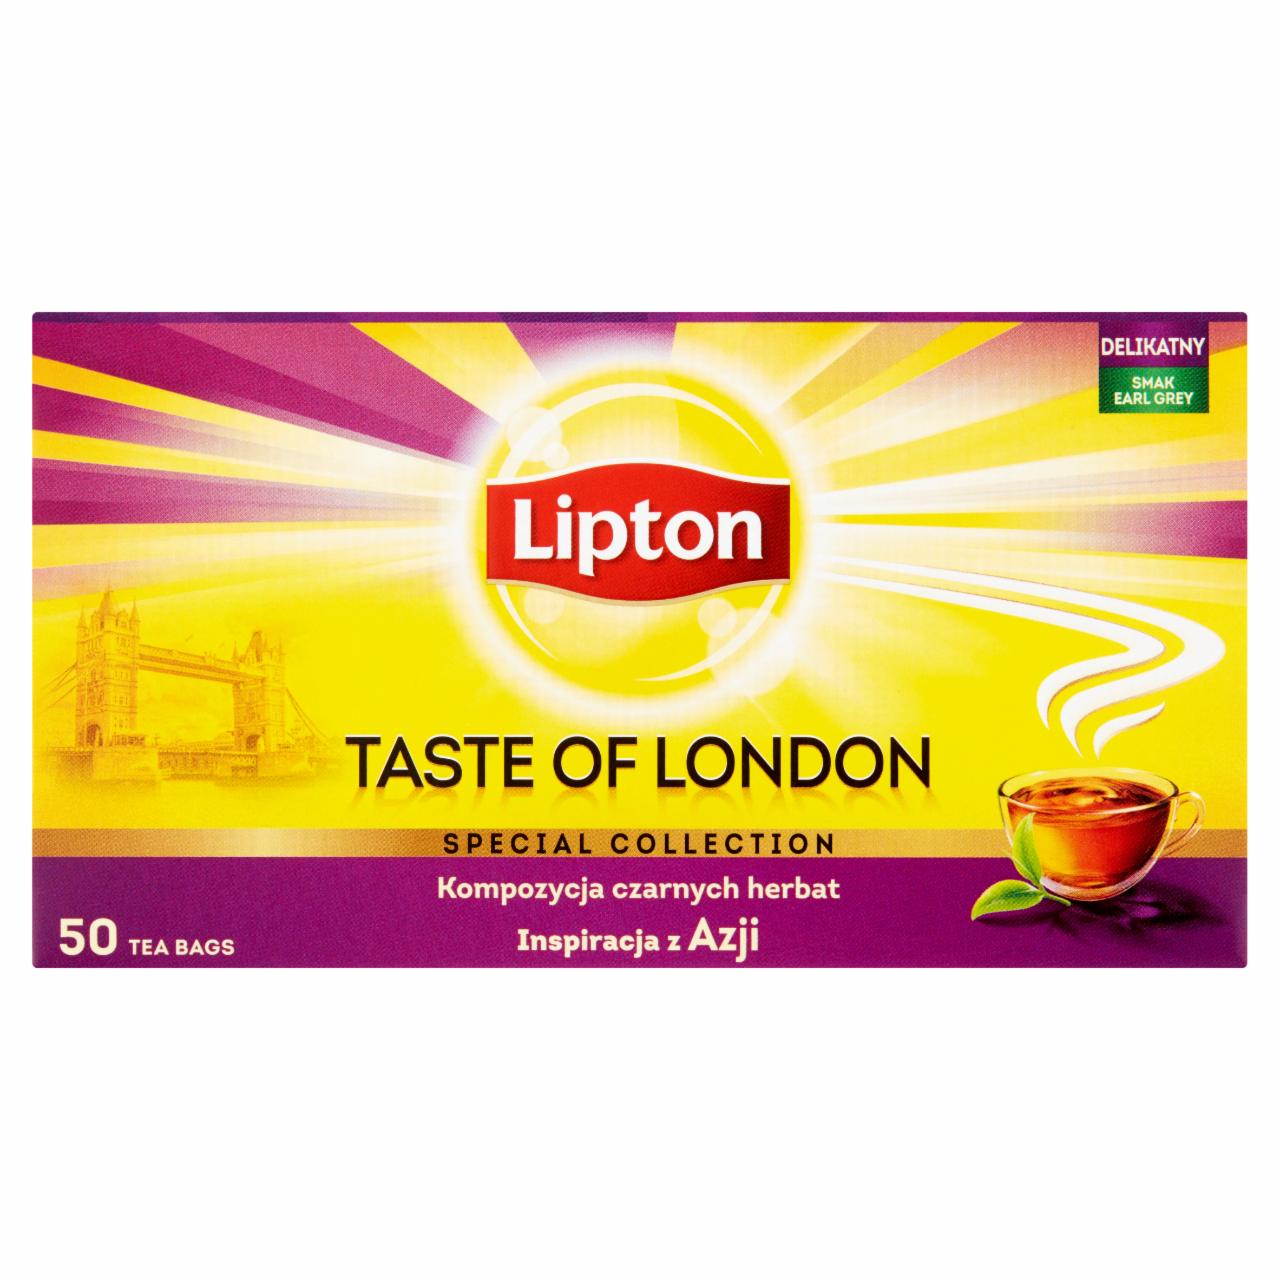 Zdjęcia - Lipton Taste of London Herbata czarna aromatyzowana 100 g (50 torebek)